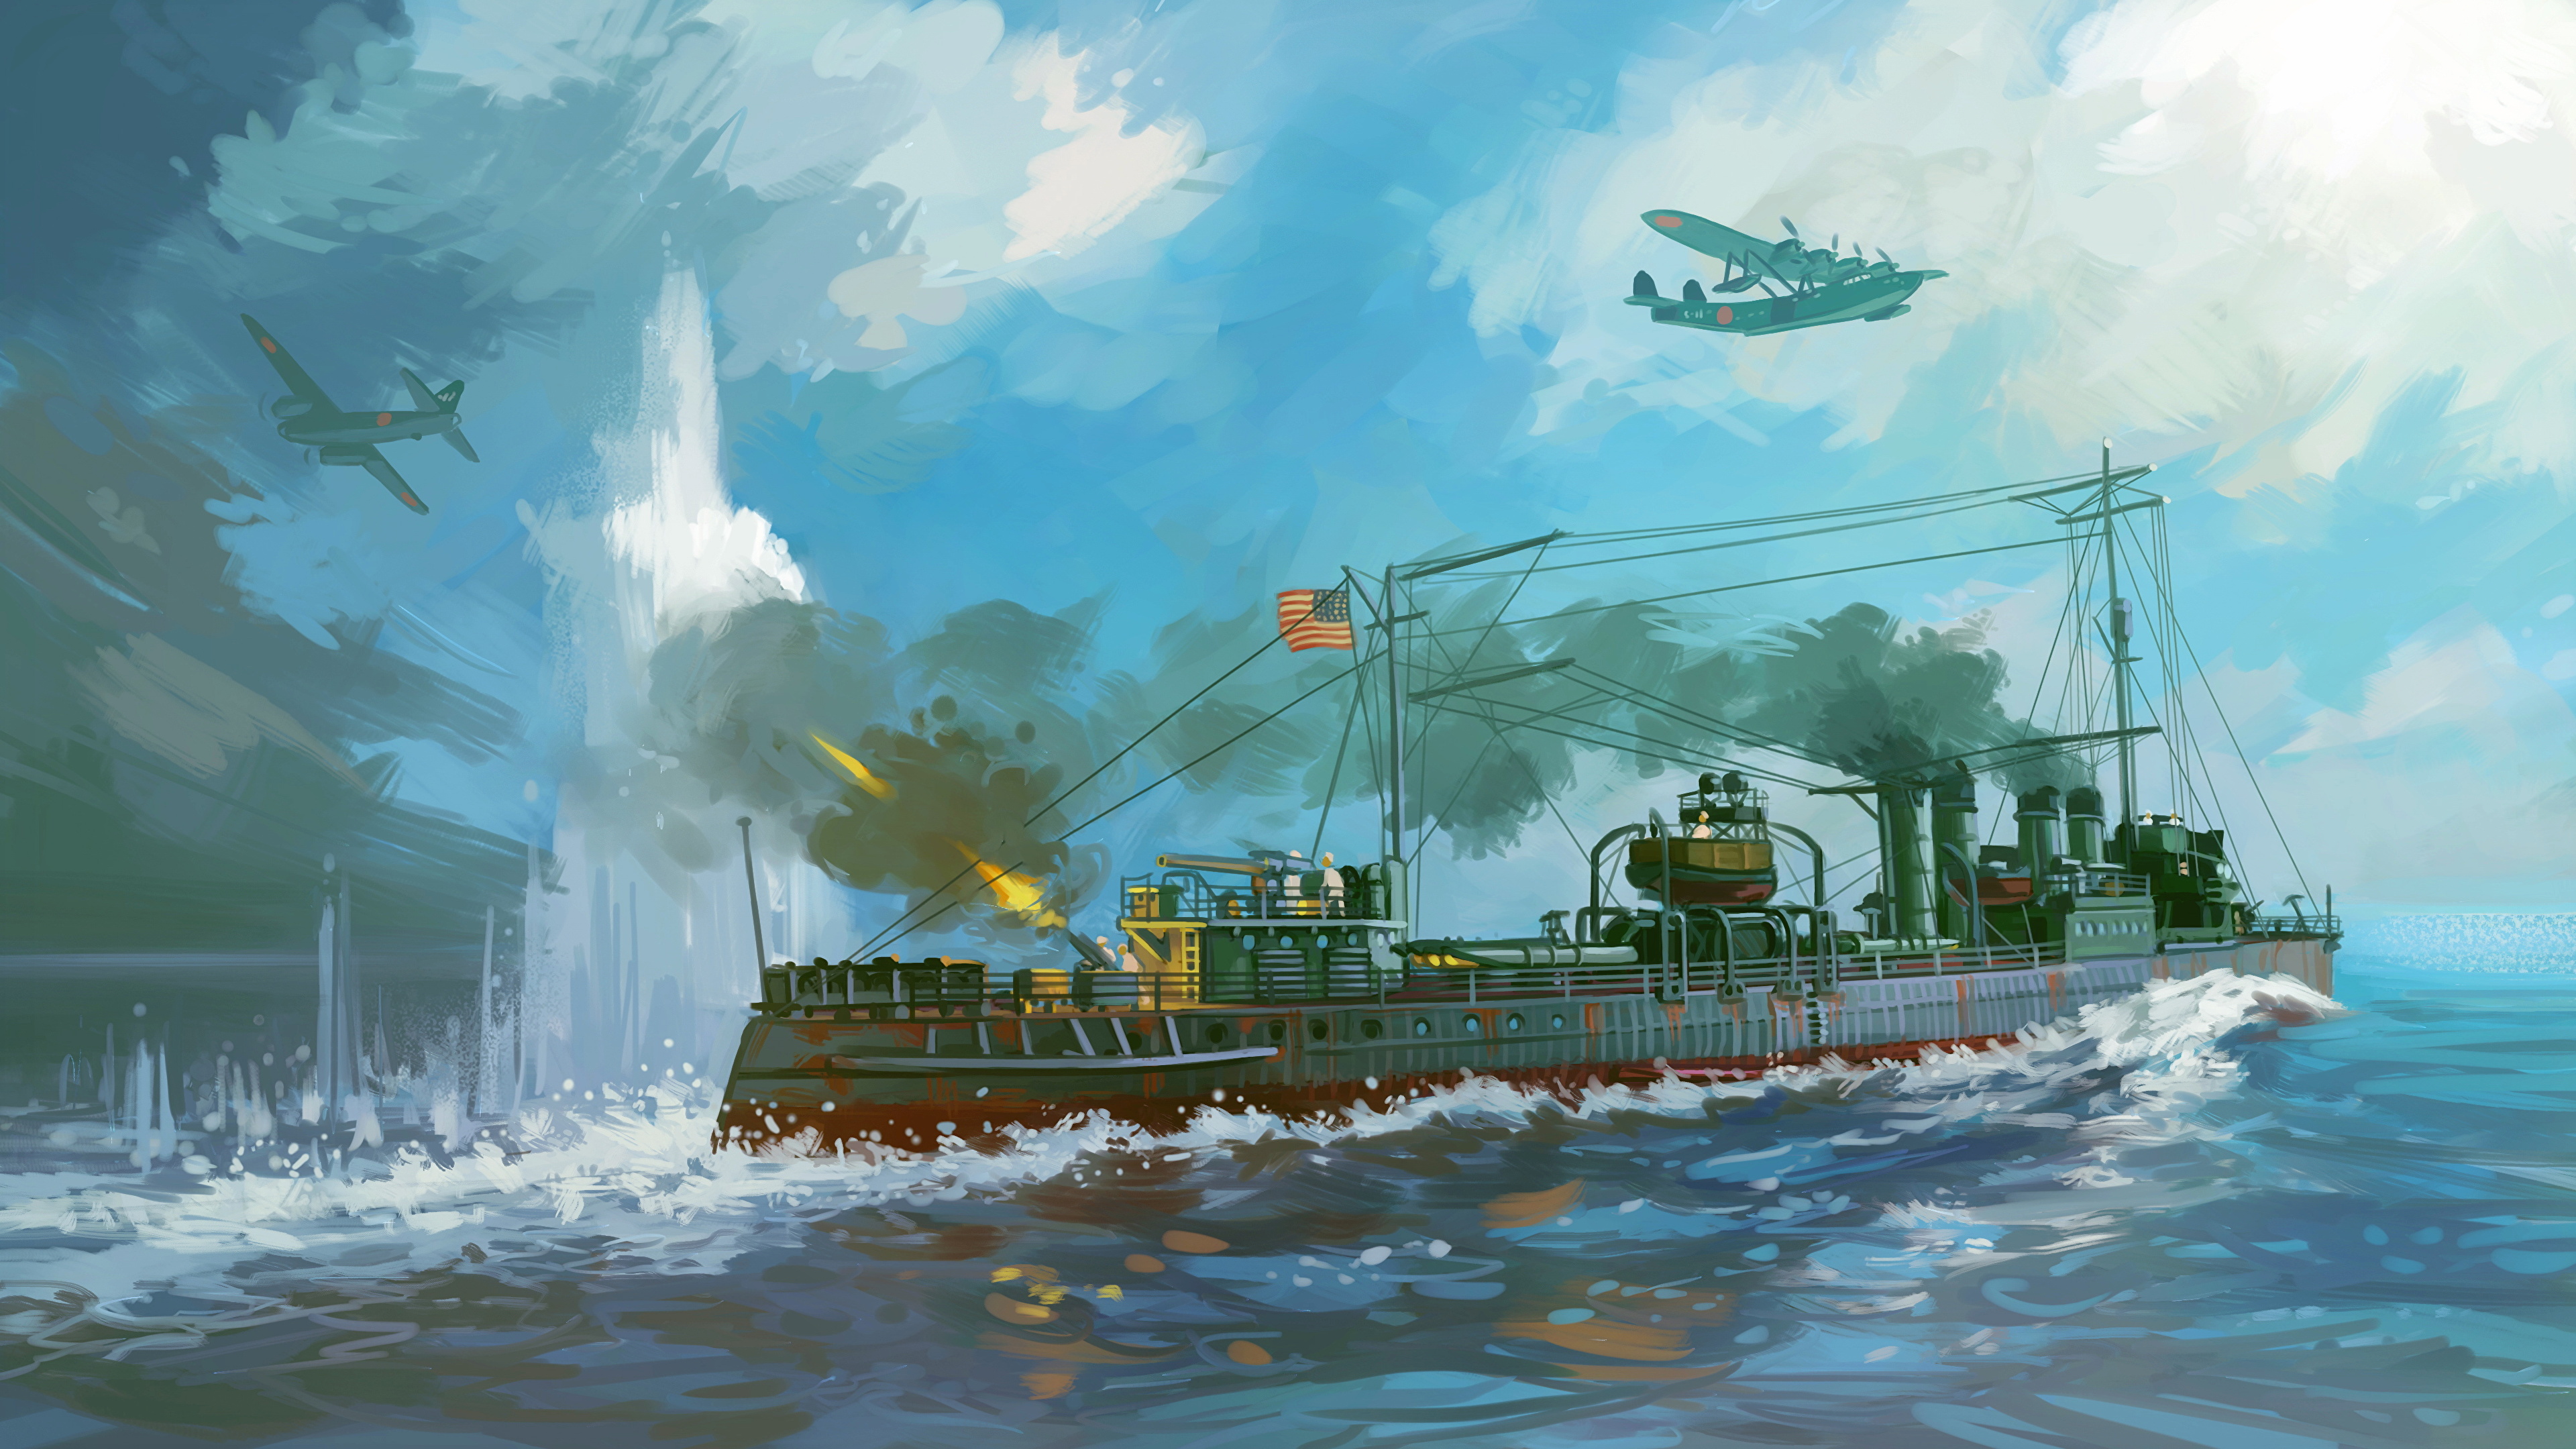 Clemson Class Destroyer Firing , HD Wallpaper & Backgrounds